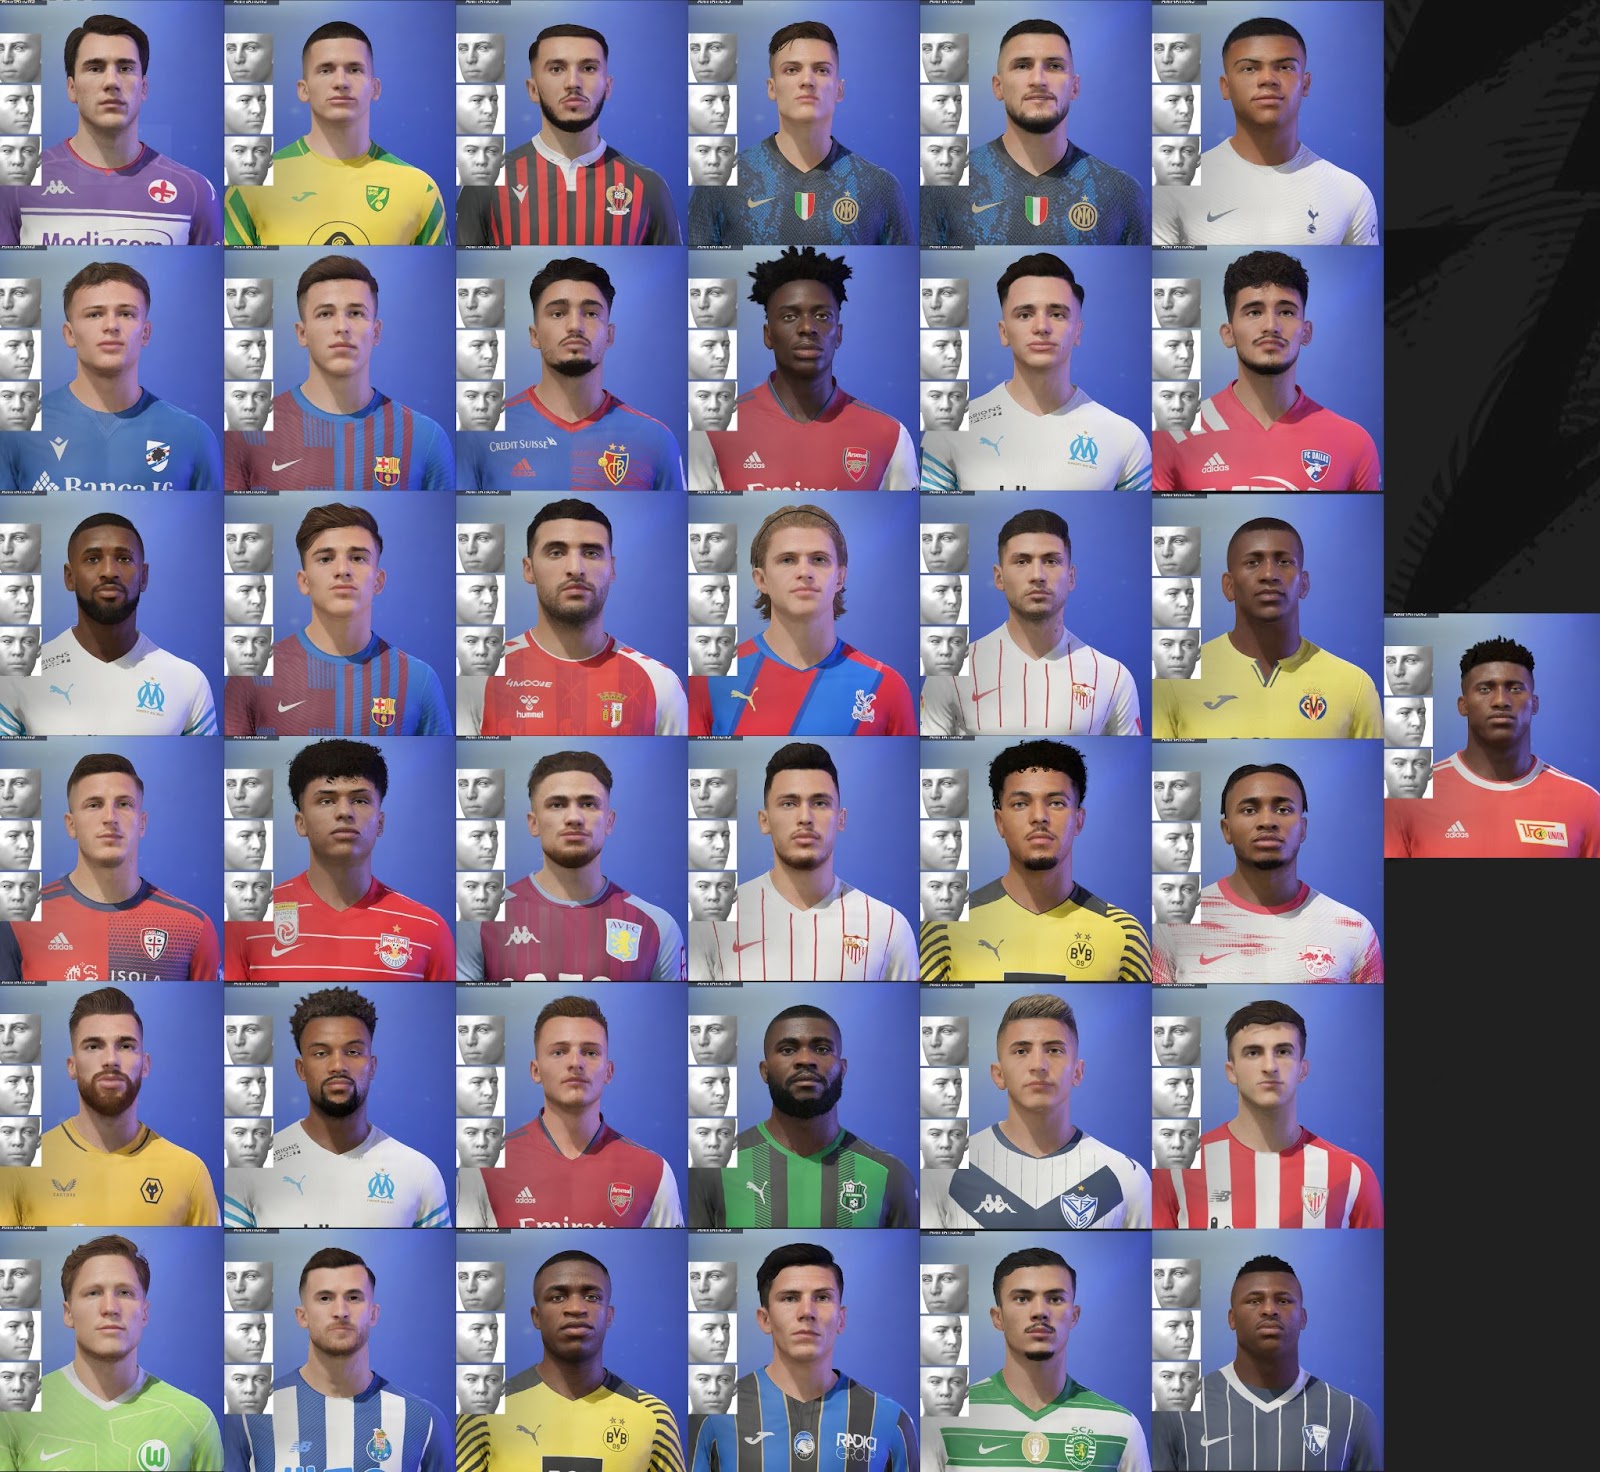 FIFA 22 - RONY Face + Stats (Tutorial) 